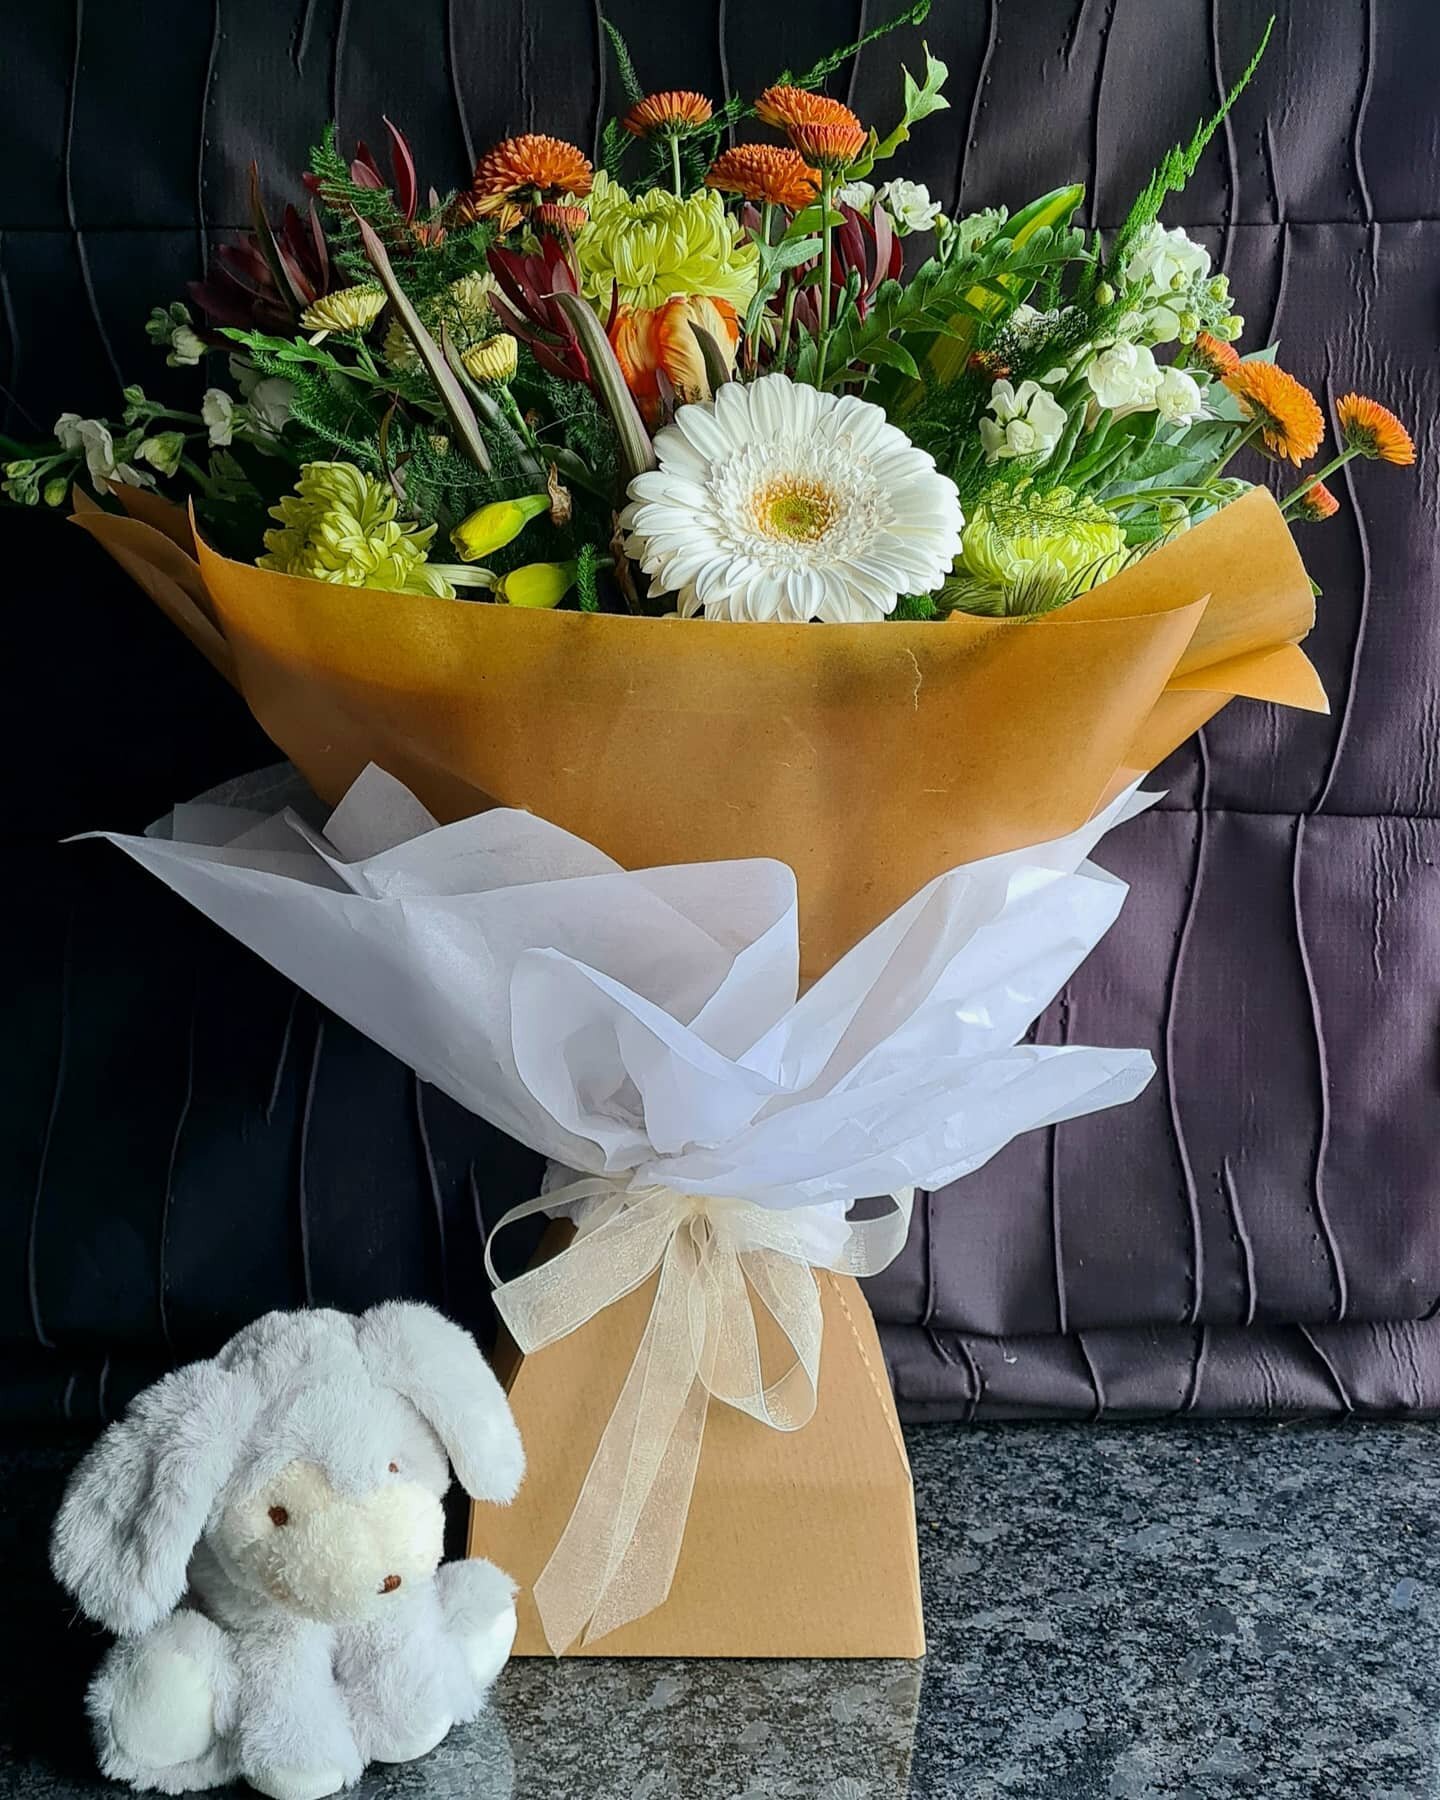 A big surprise for a new little soul 🤍🌸
#flowers #customorder #florist